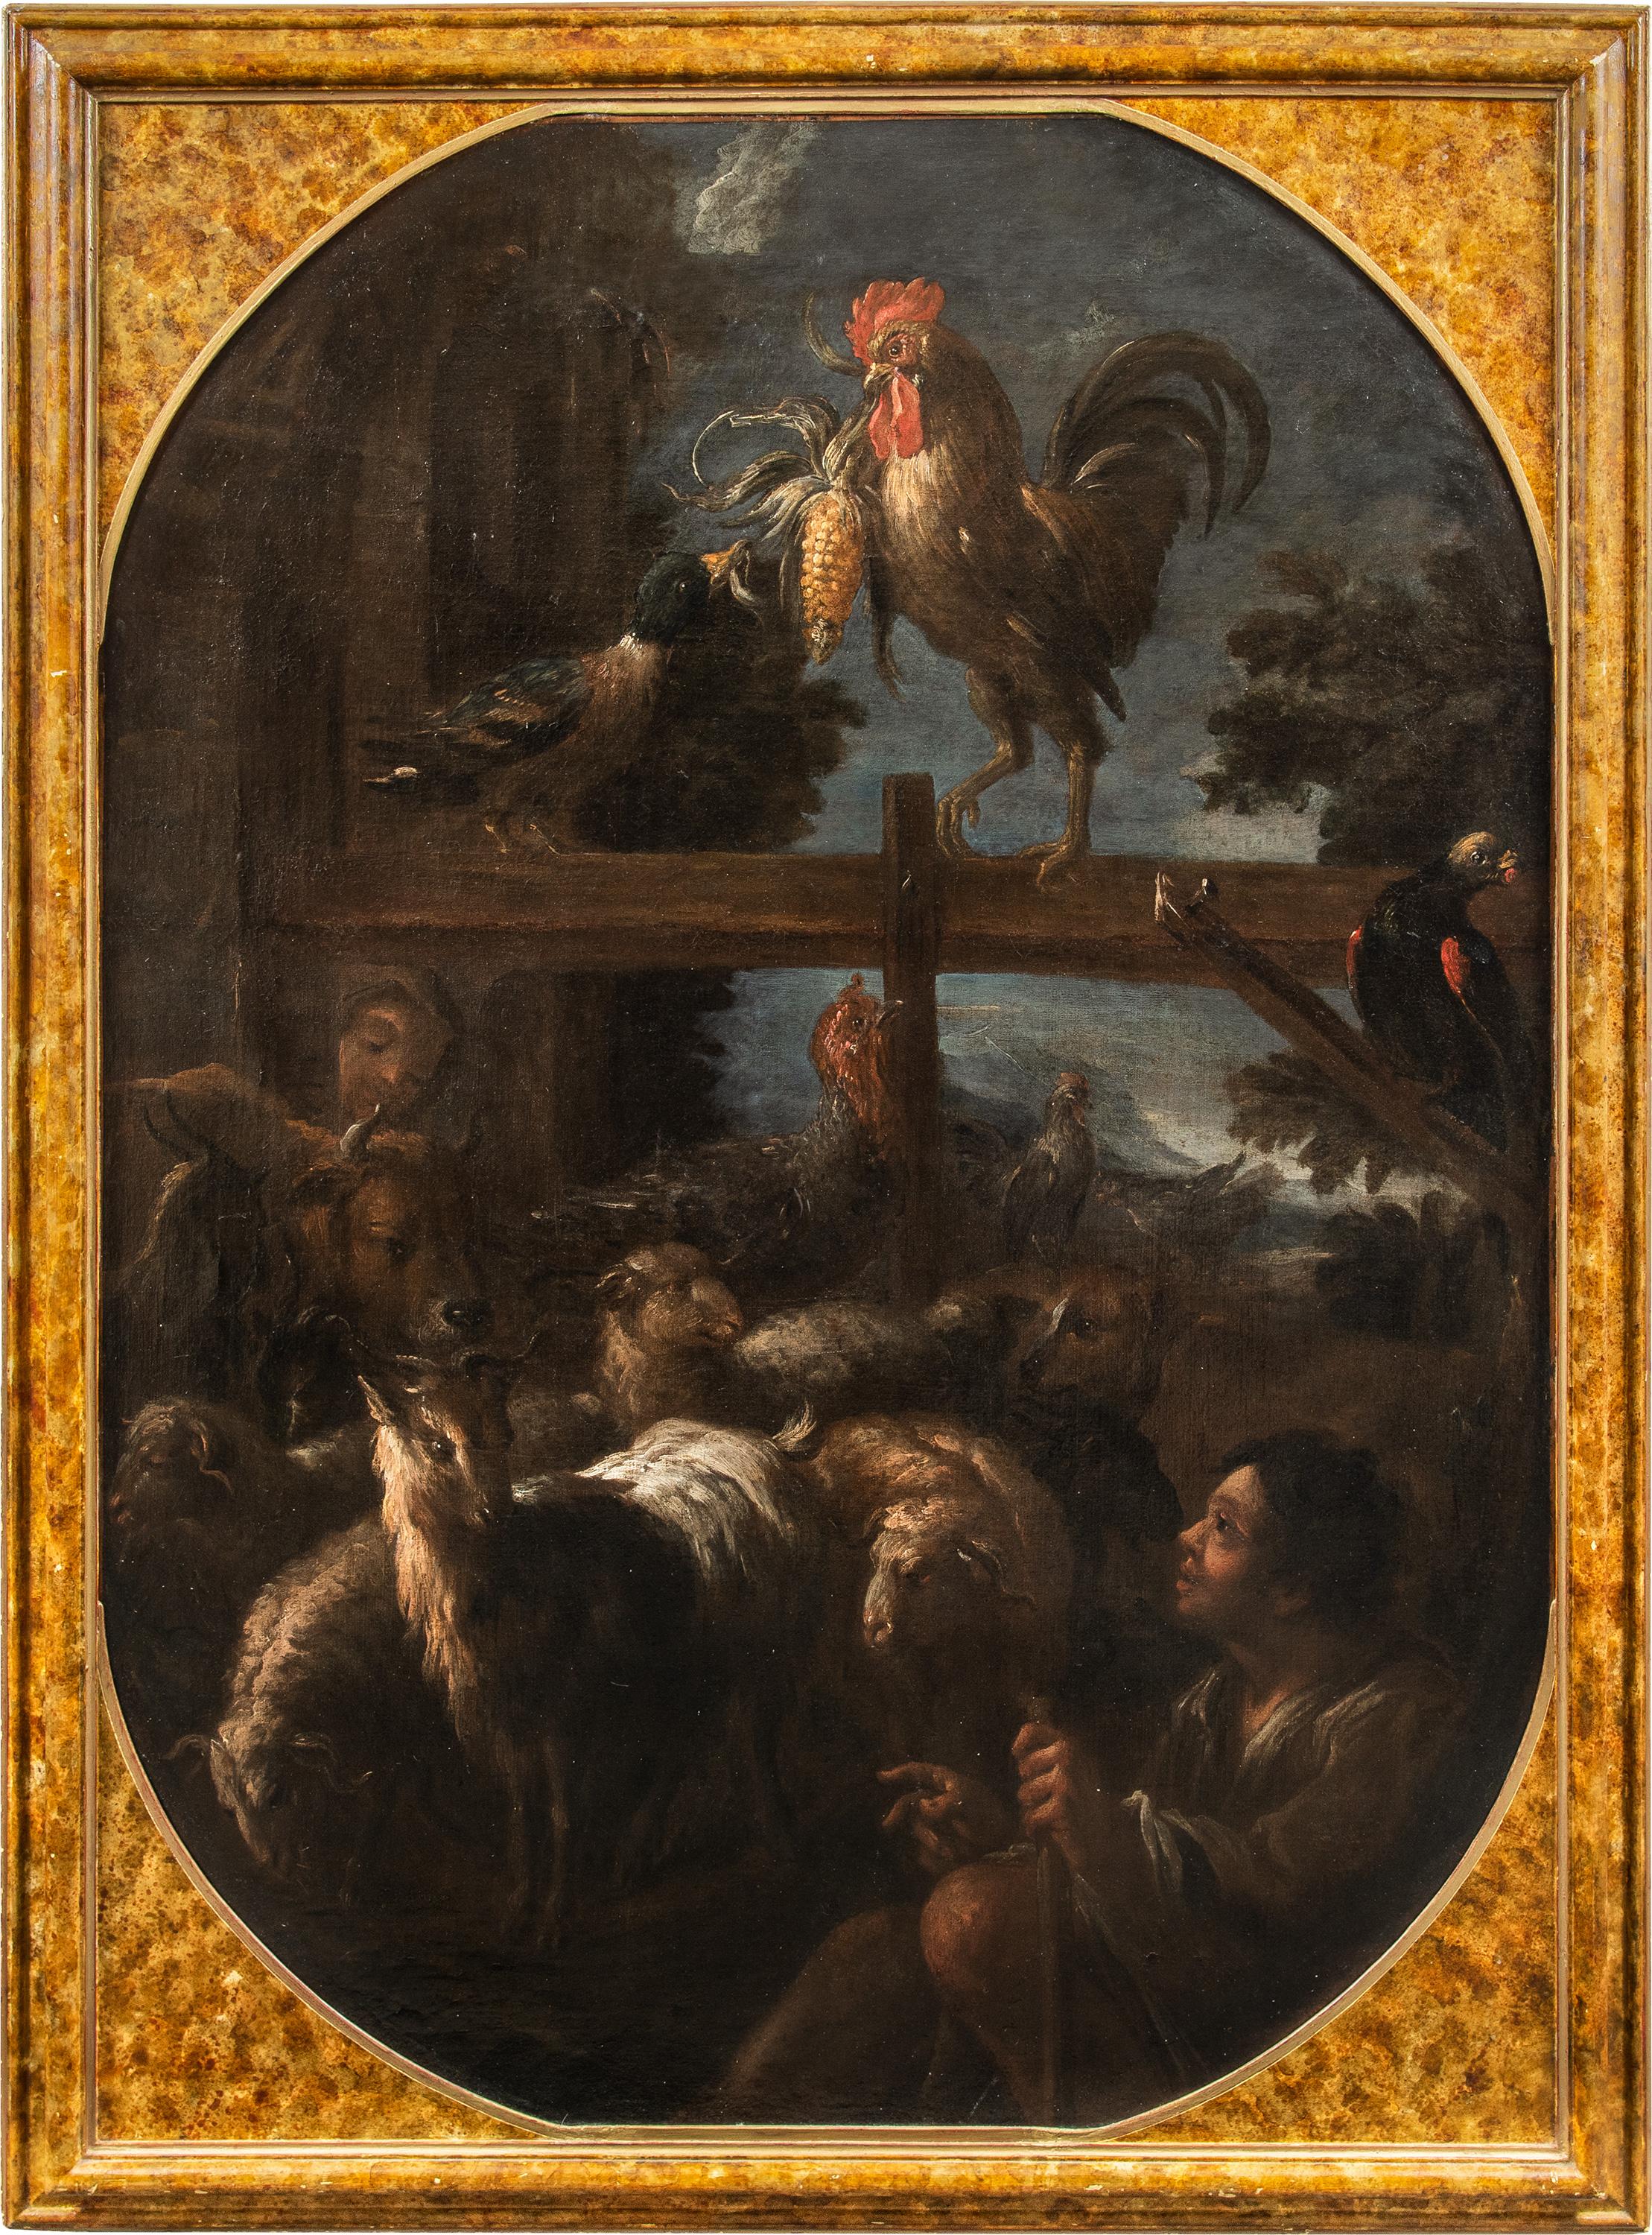 Felice Boselli (Piacenza 1650 - Parma 1732) - Berger avec troupeau et gibier.

155 x 112 cm sans cadre, 170 x 126 cm avec cadre.

Huile sur toile, dans un cadre en bois laqué faux marbre.

Le tableau présente des affinités stylistiques avec le "Jeu